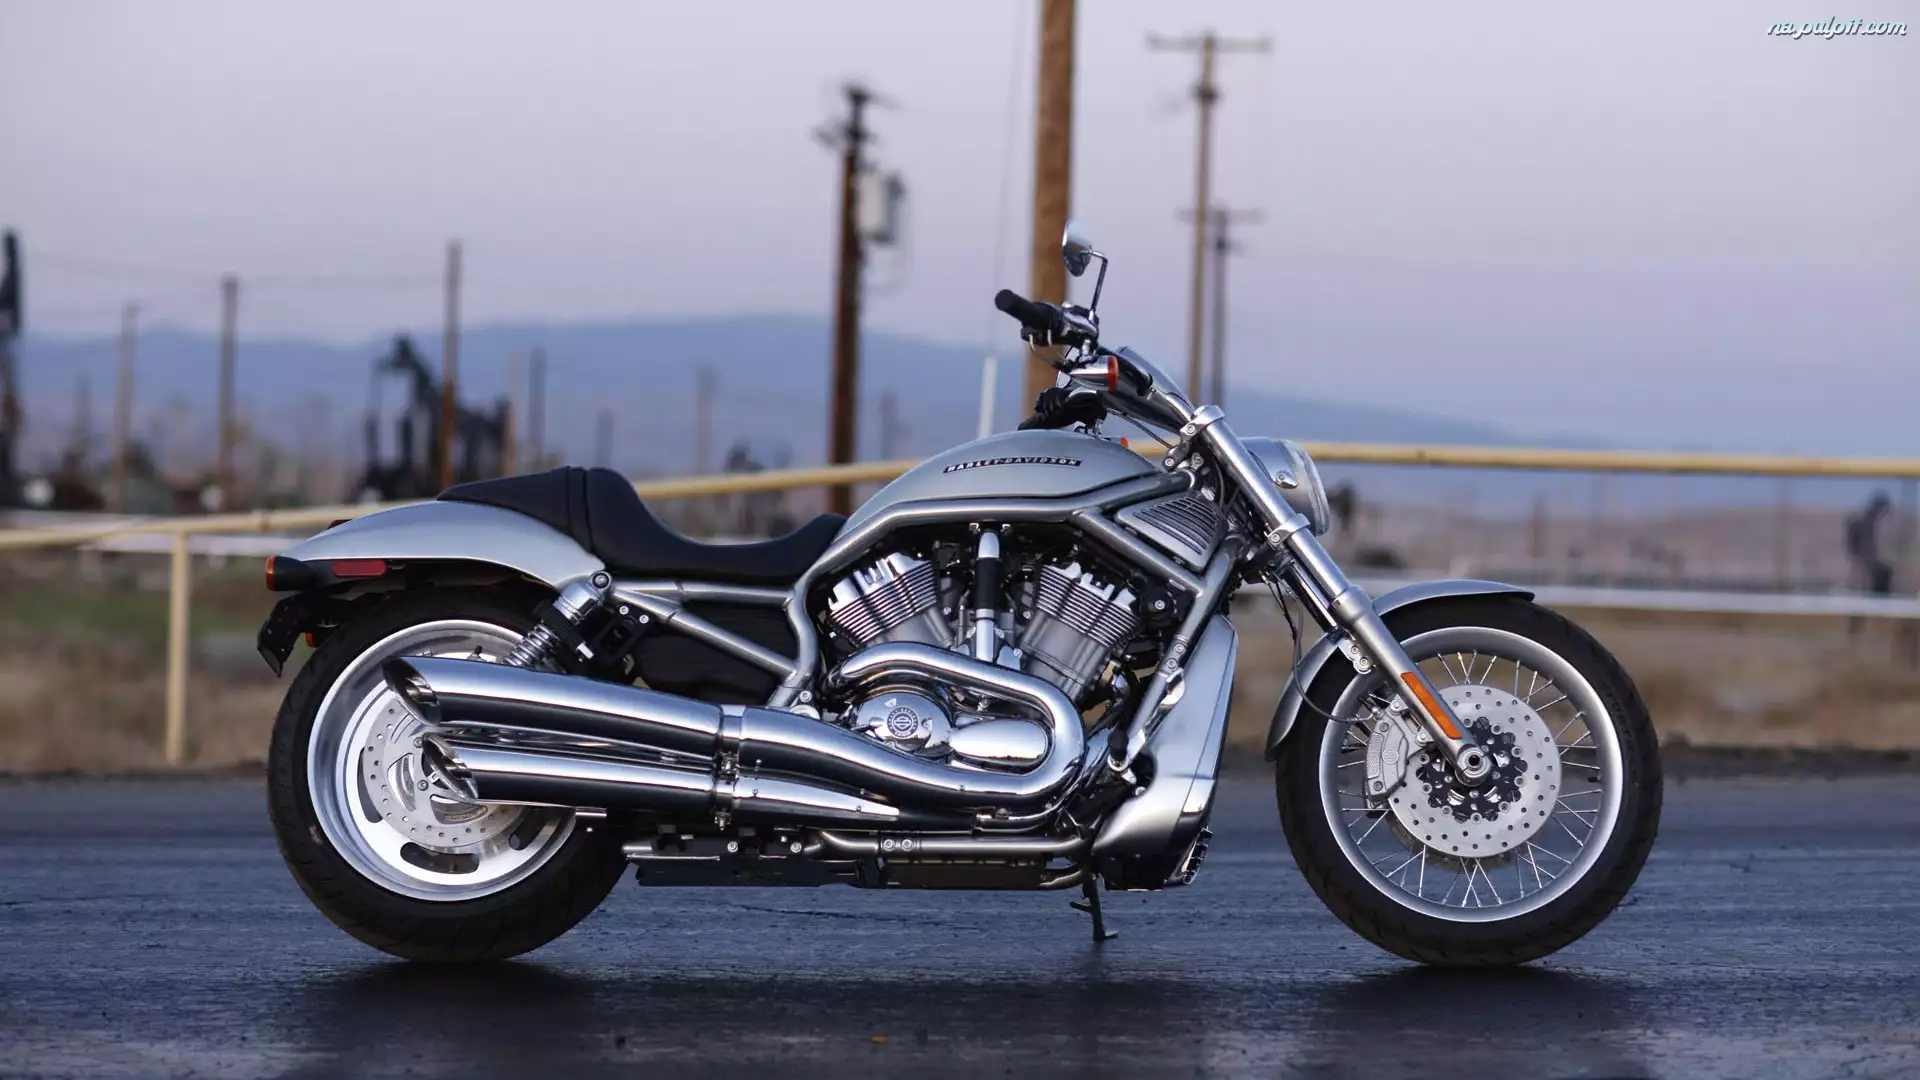 Harley Davidson V-Rod, Srebrny